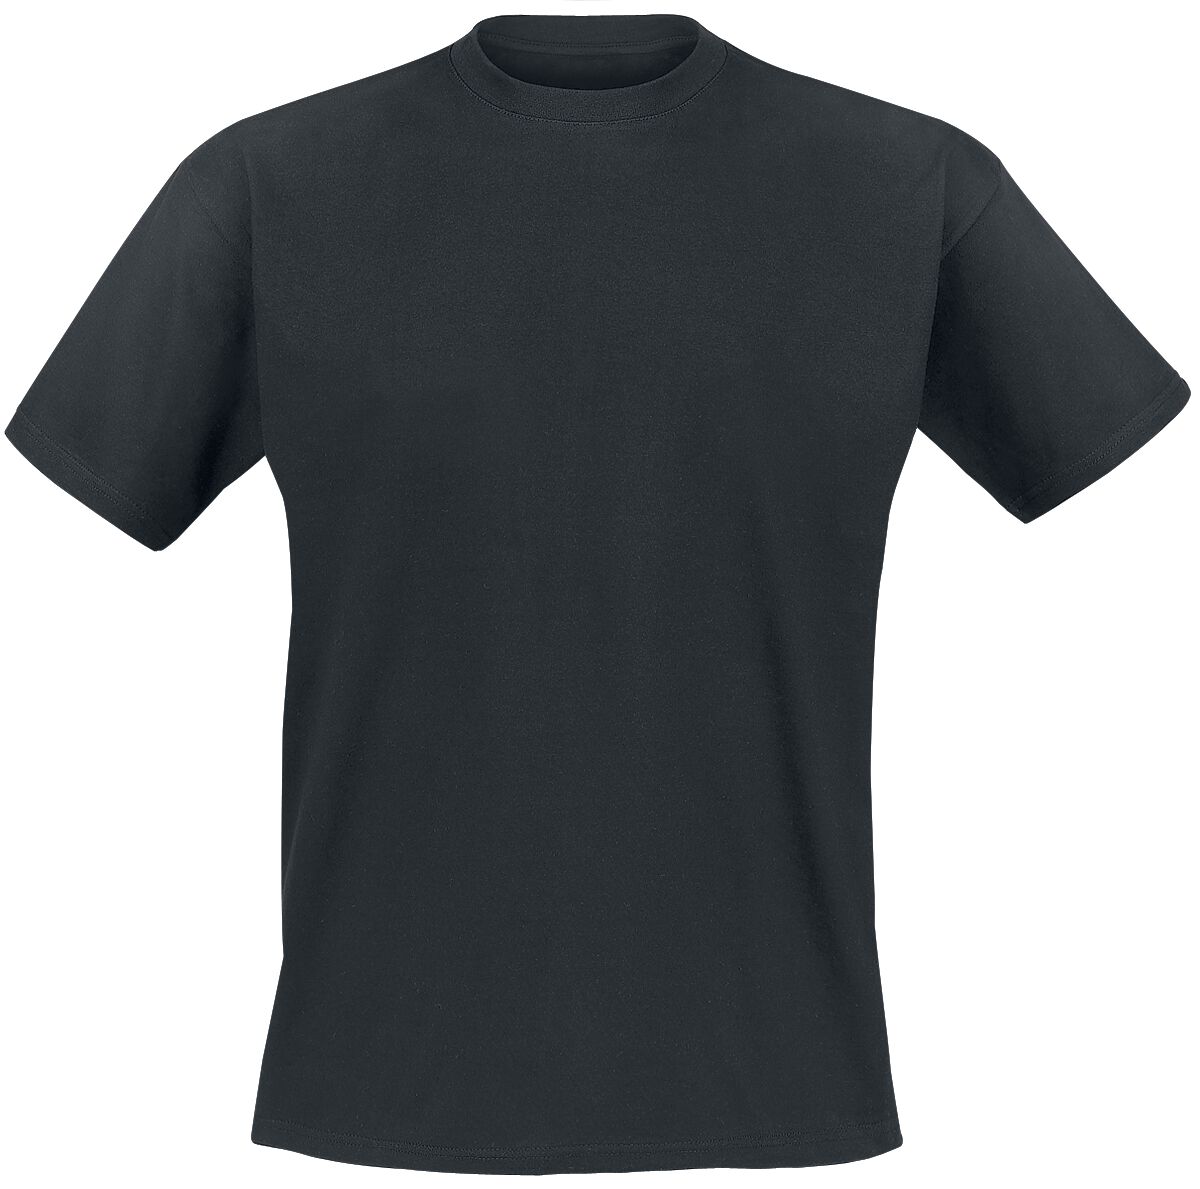 Genesis T-Shirt - Mad Hatter - S bis XXL - für Männer - Größe S - schwarz  - EMP exklusives Merchandise!